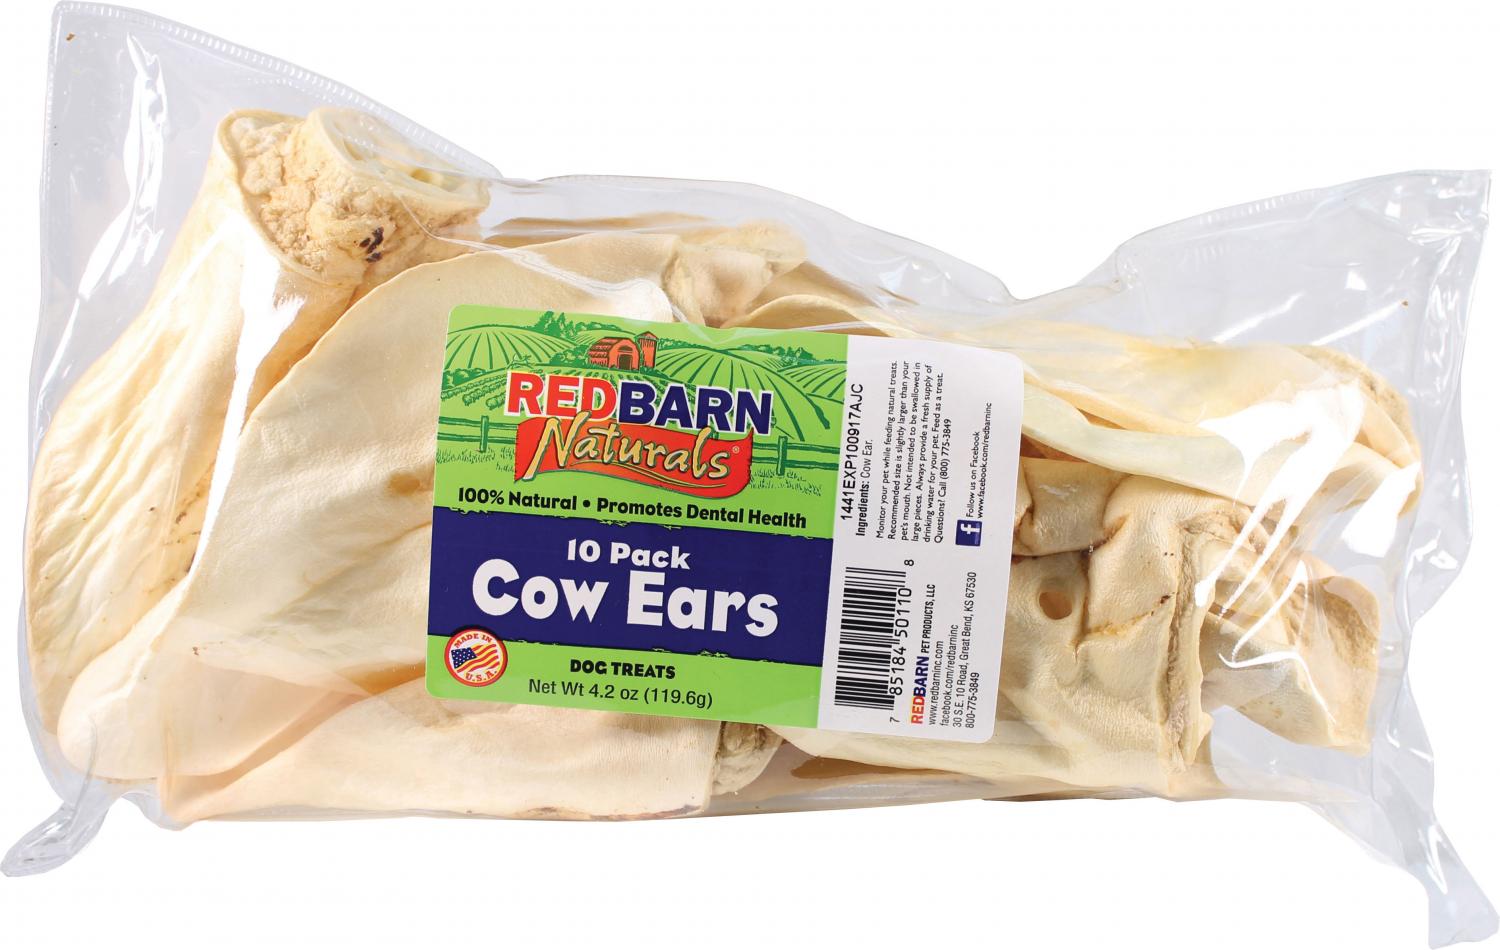 Redbarn Naturals Cow Ears Dog Treats, 10 Pack, Natural